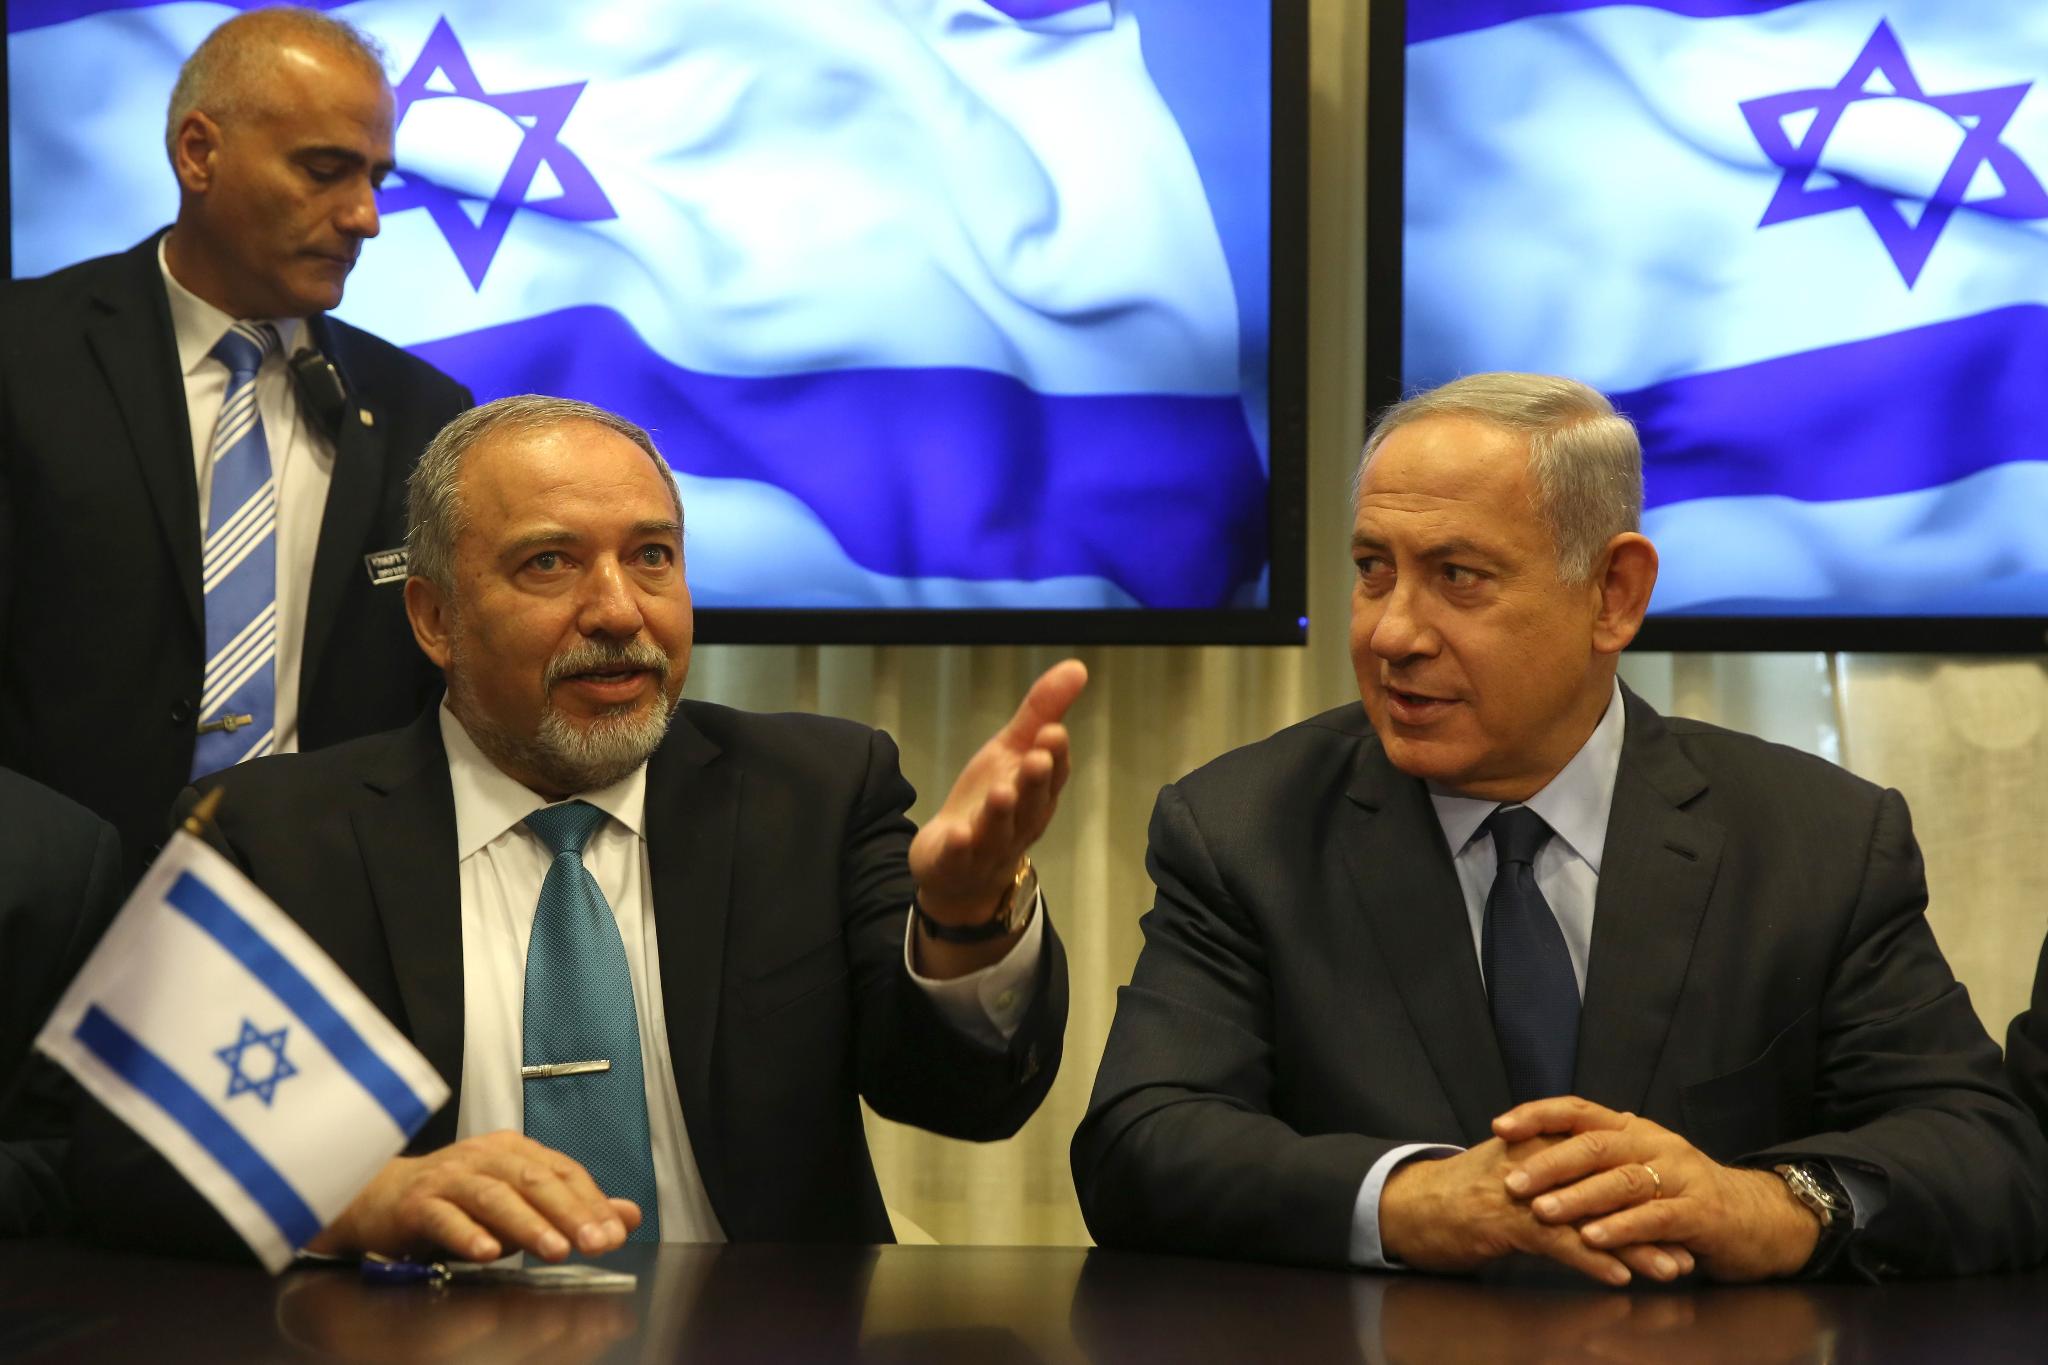 Regierungskrise in Israel: Das Battle der zionistischen Flügel um die Führung der Apartheid